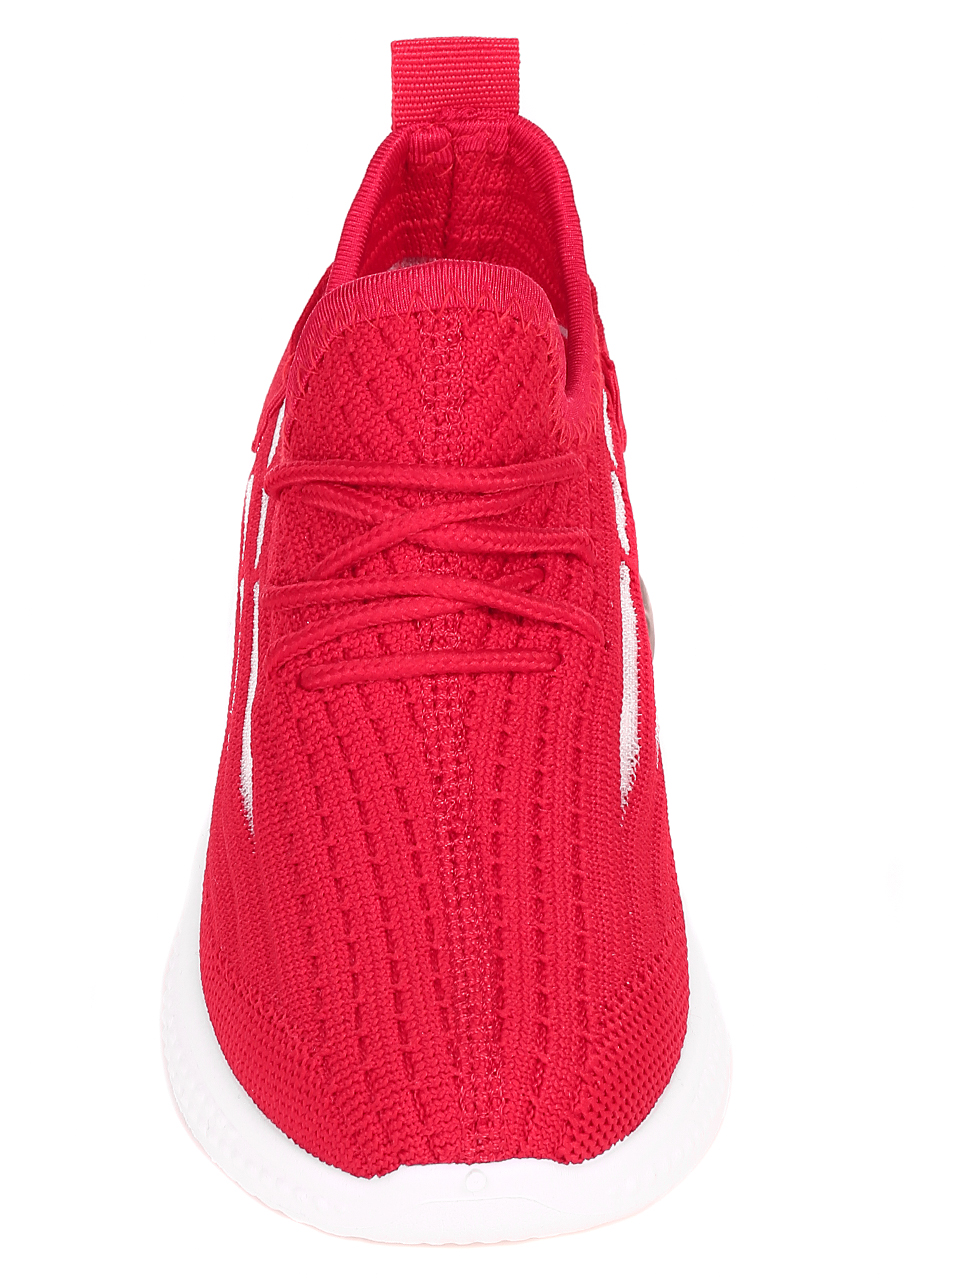 Ежедневни детски обувки в червено 18U-22056 red